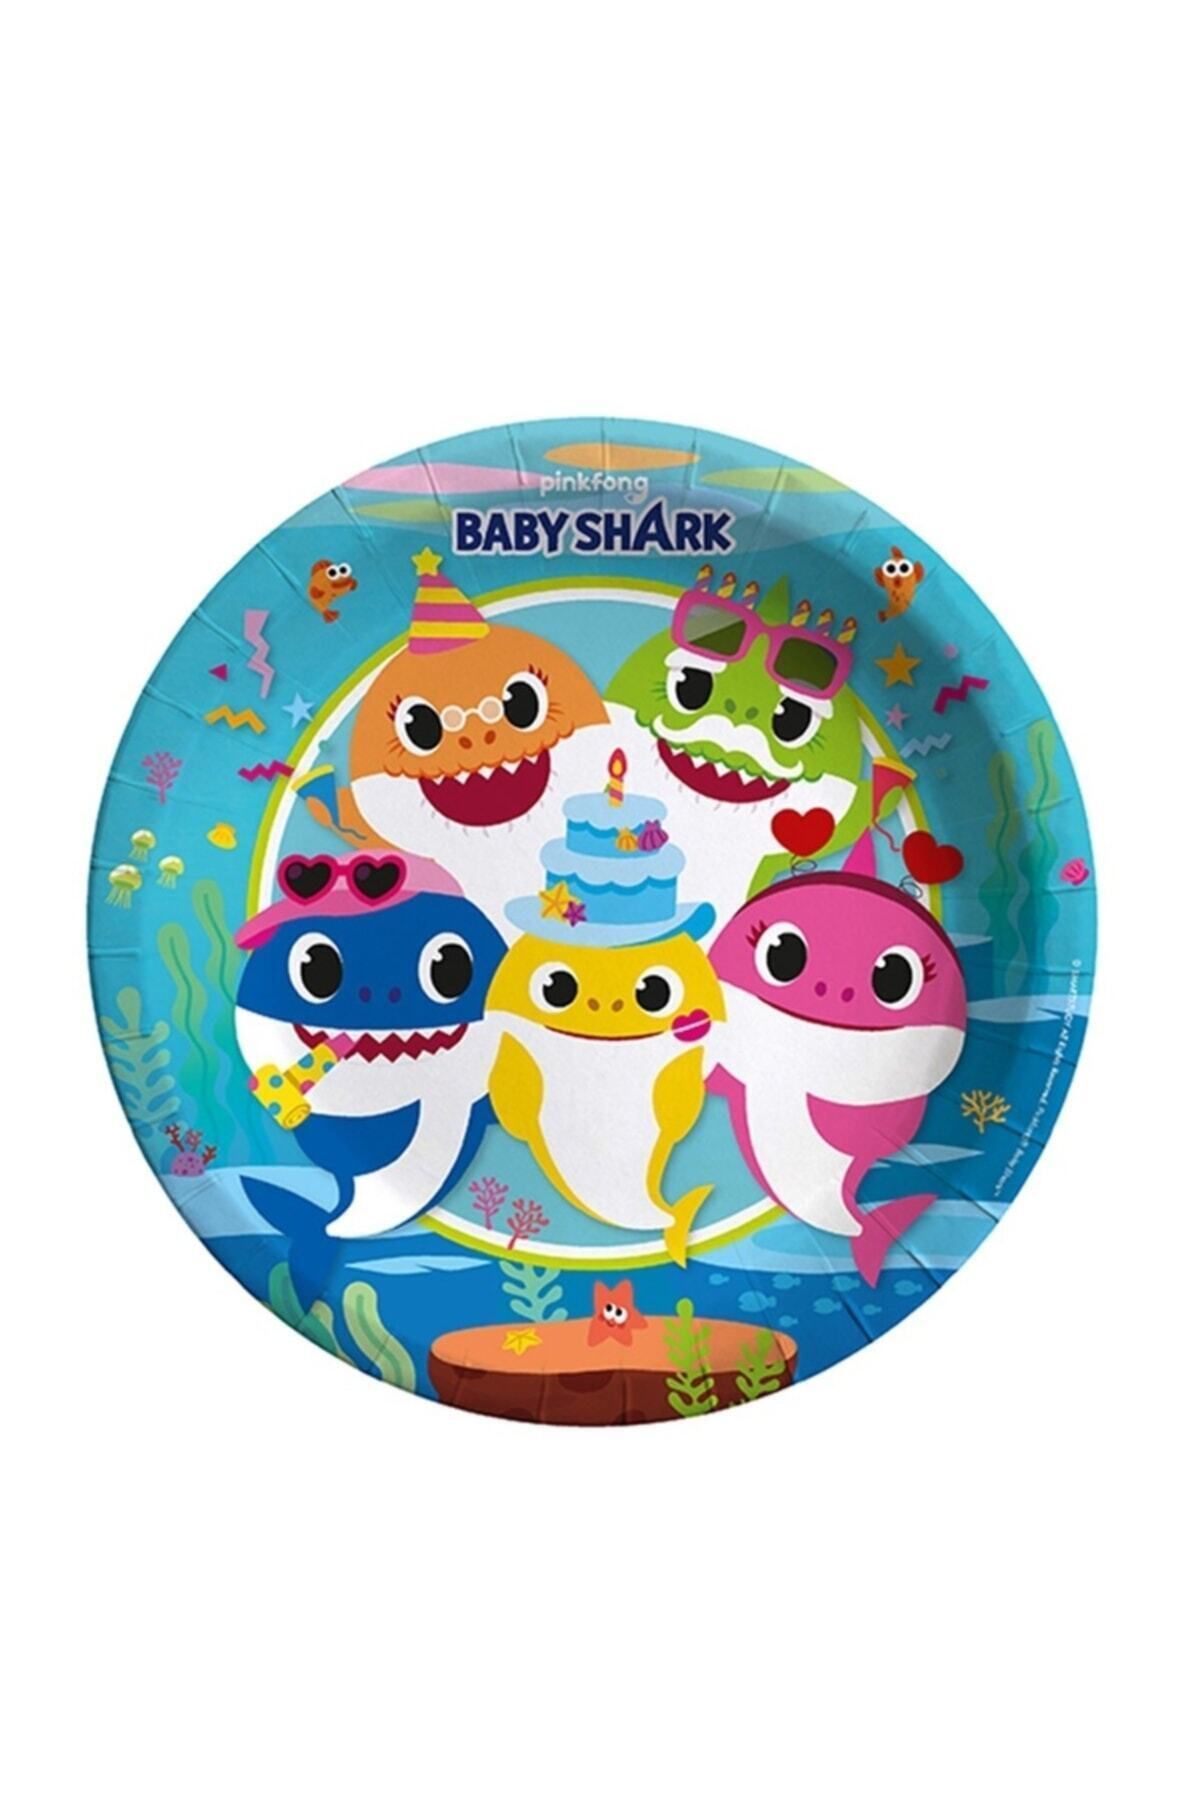 Birlik Oyuncak Lpb6416 Balonevi, Baby Shark Parti Zamanı, 8 Adet Kağıt Tabak, 23 Cm